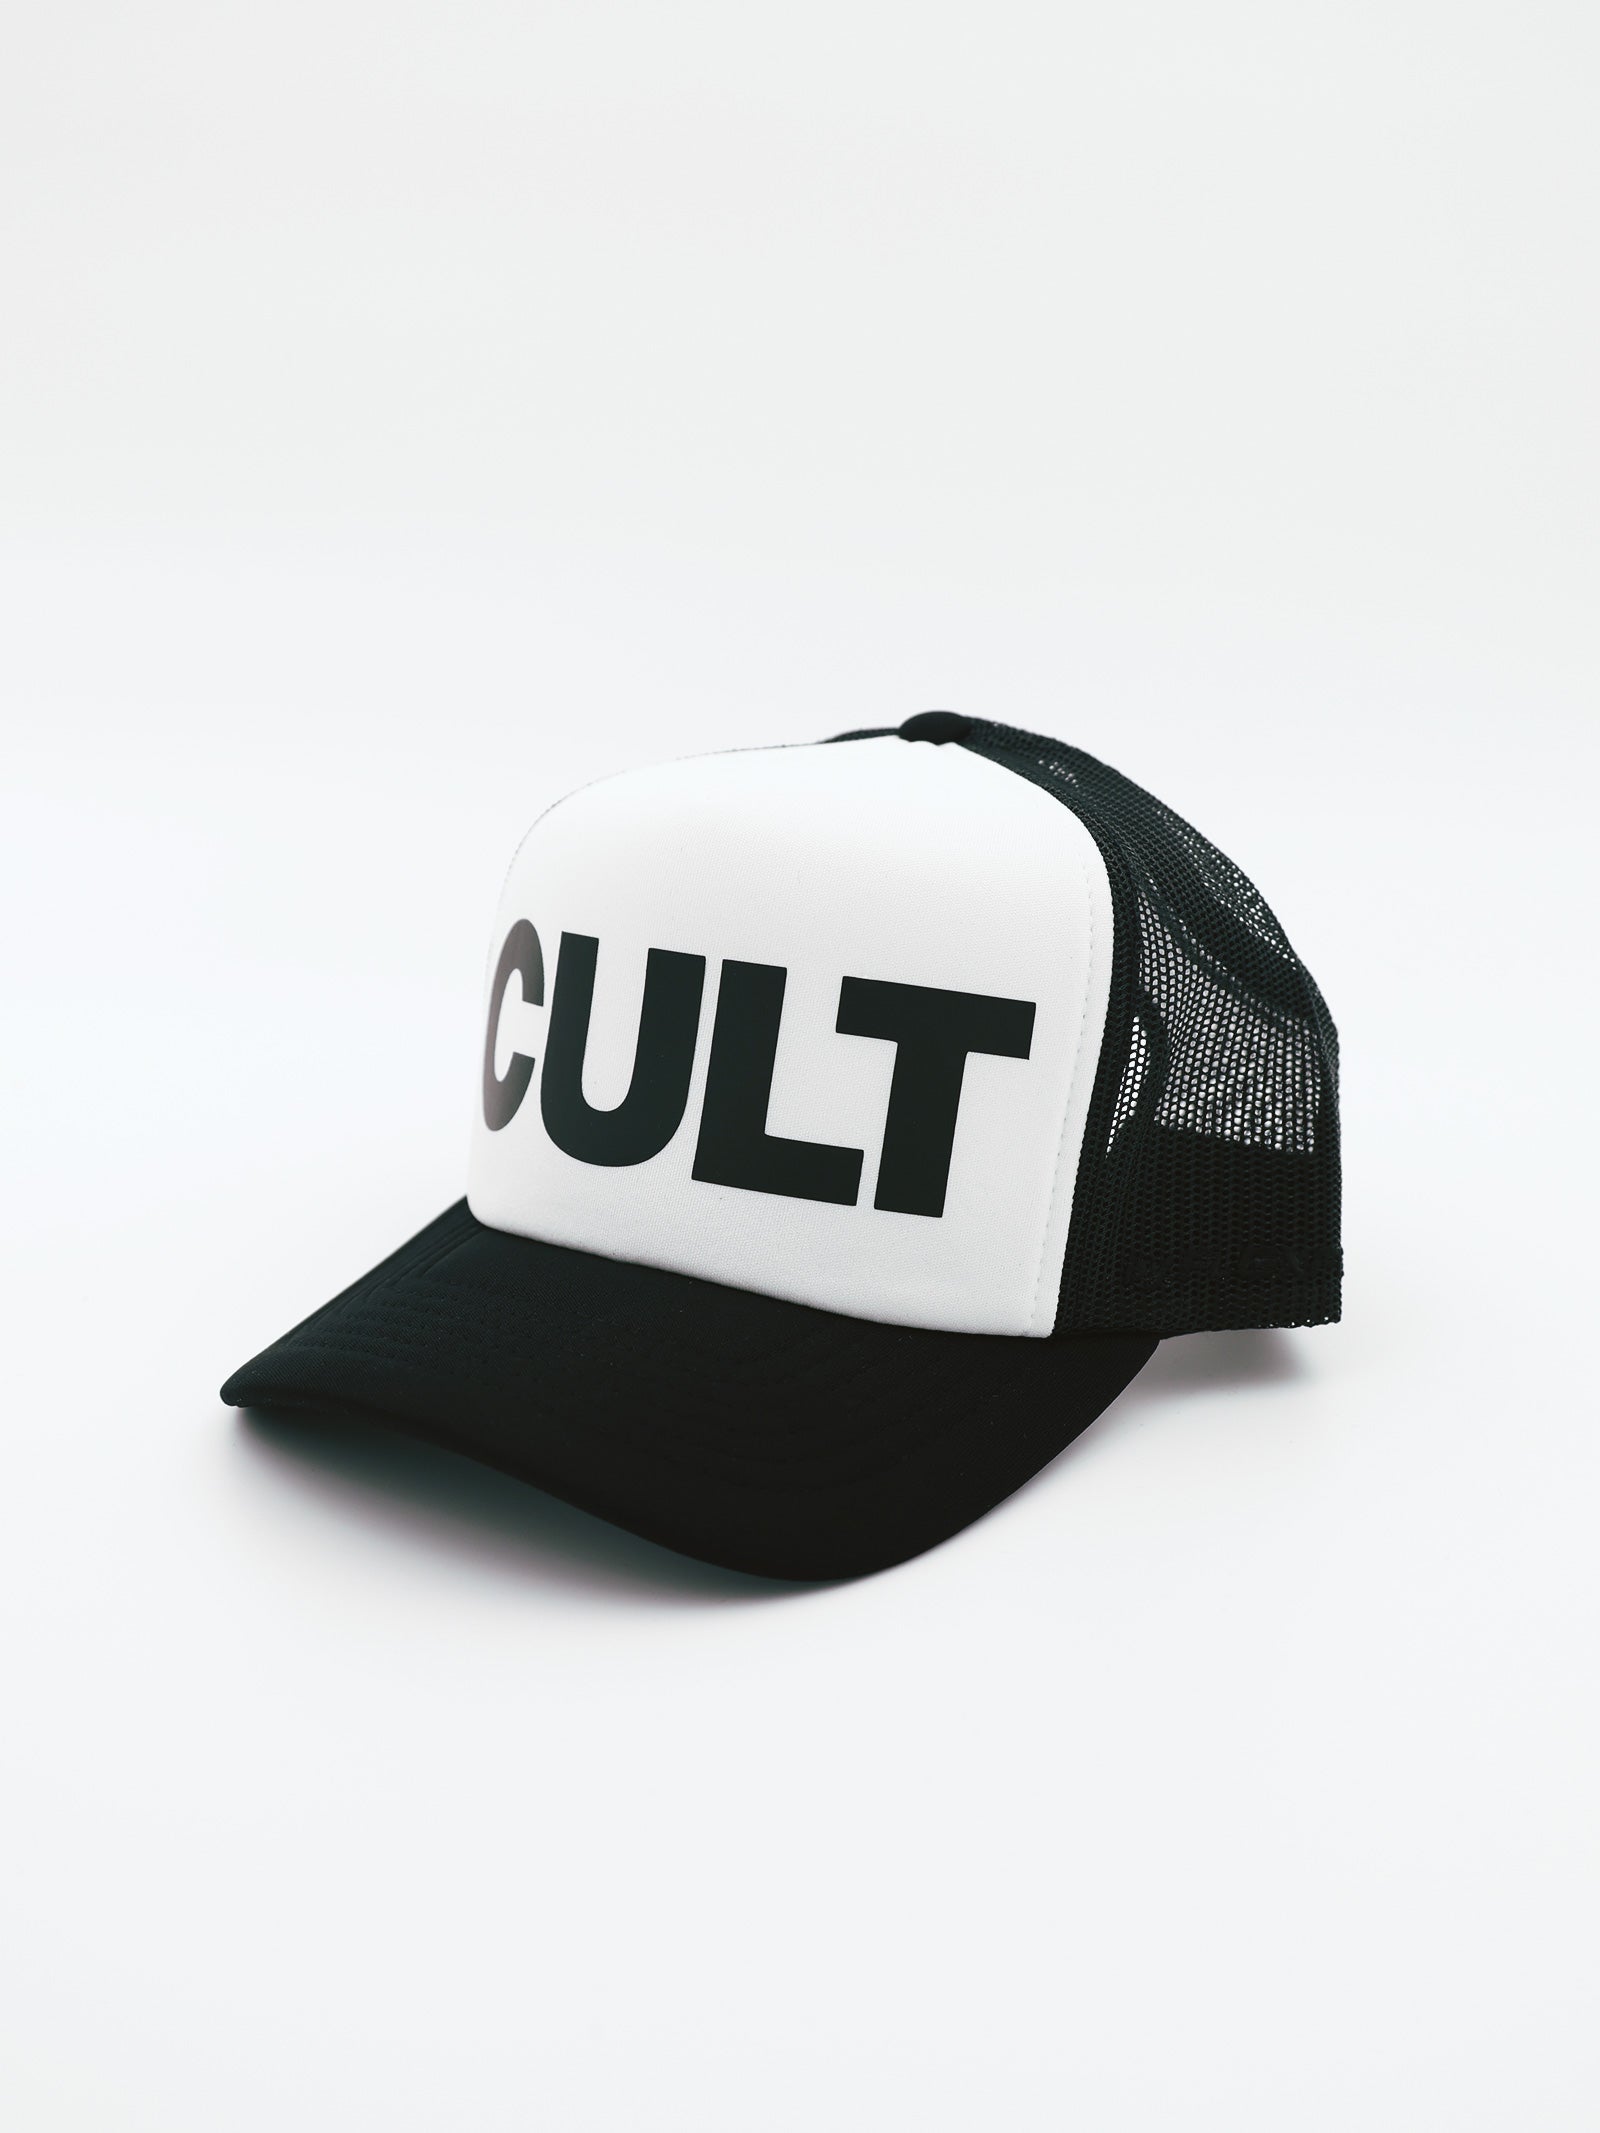 Black¹ Cult Trucker Cap